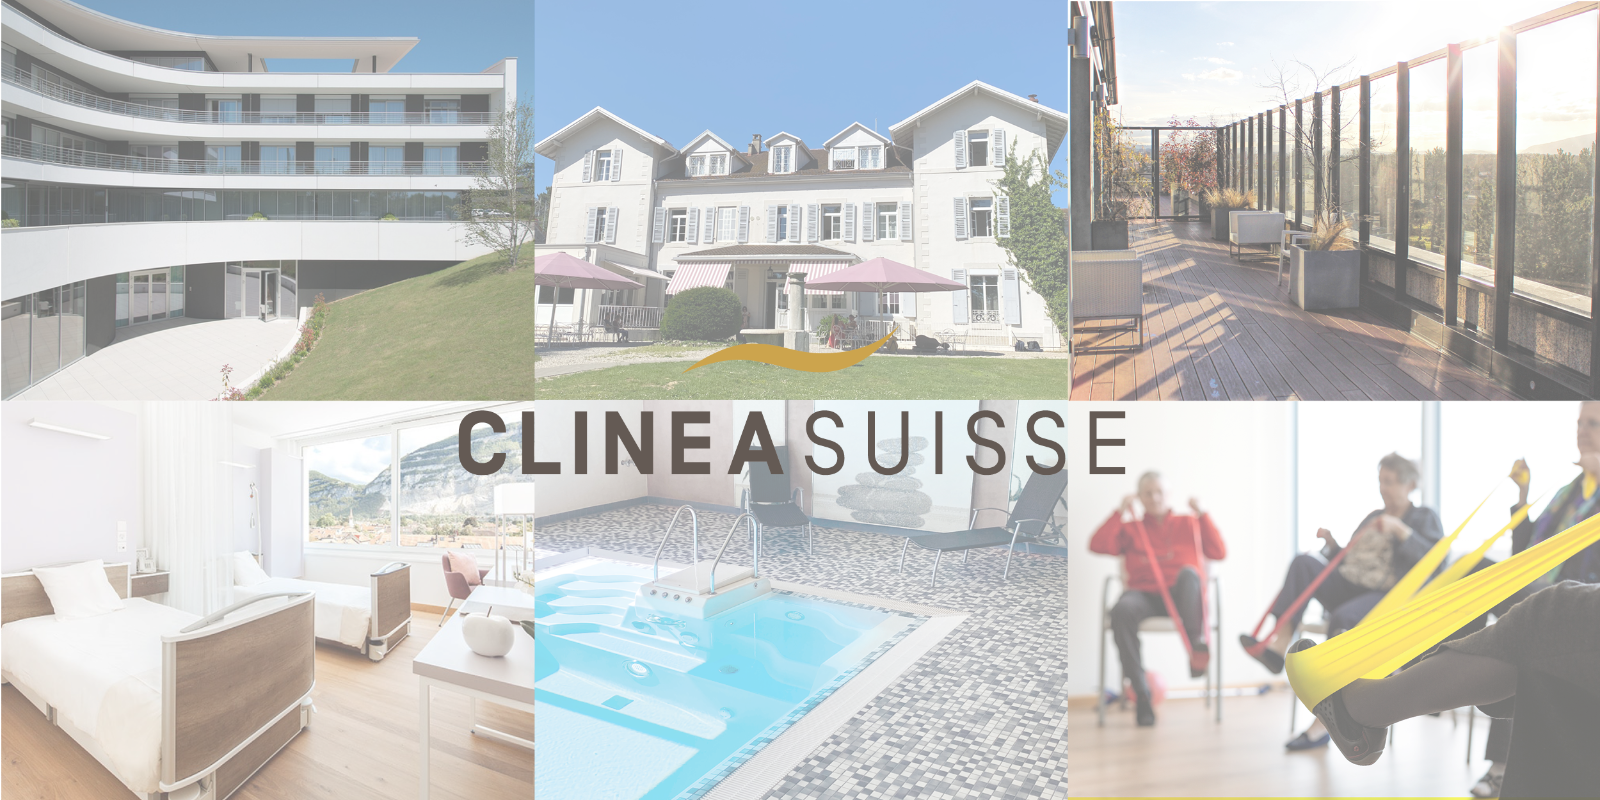 ClineaSuisse_montage_cliniques.png